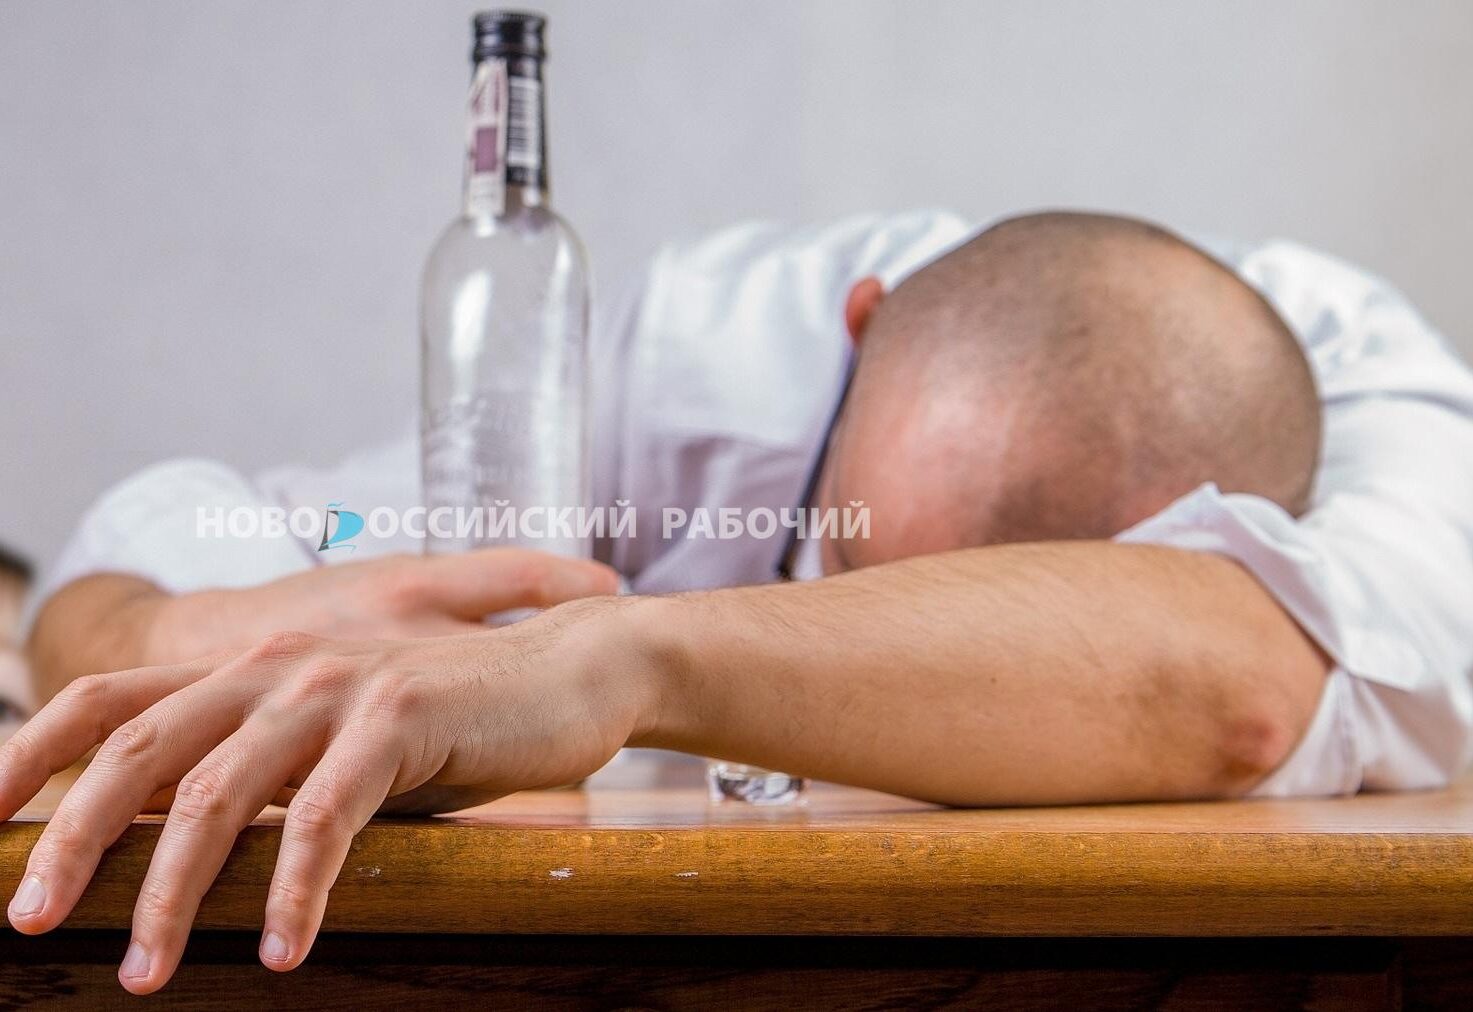 В Новороссийске умер мужчина от отравления метиловым спиртом